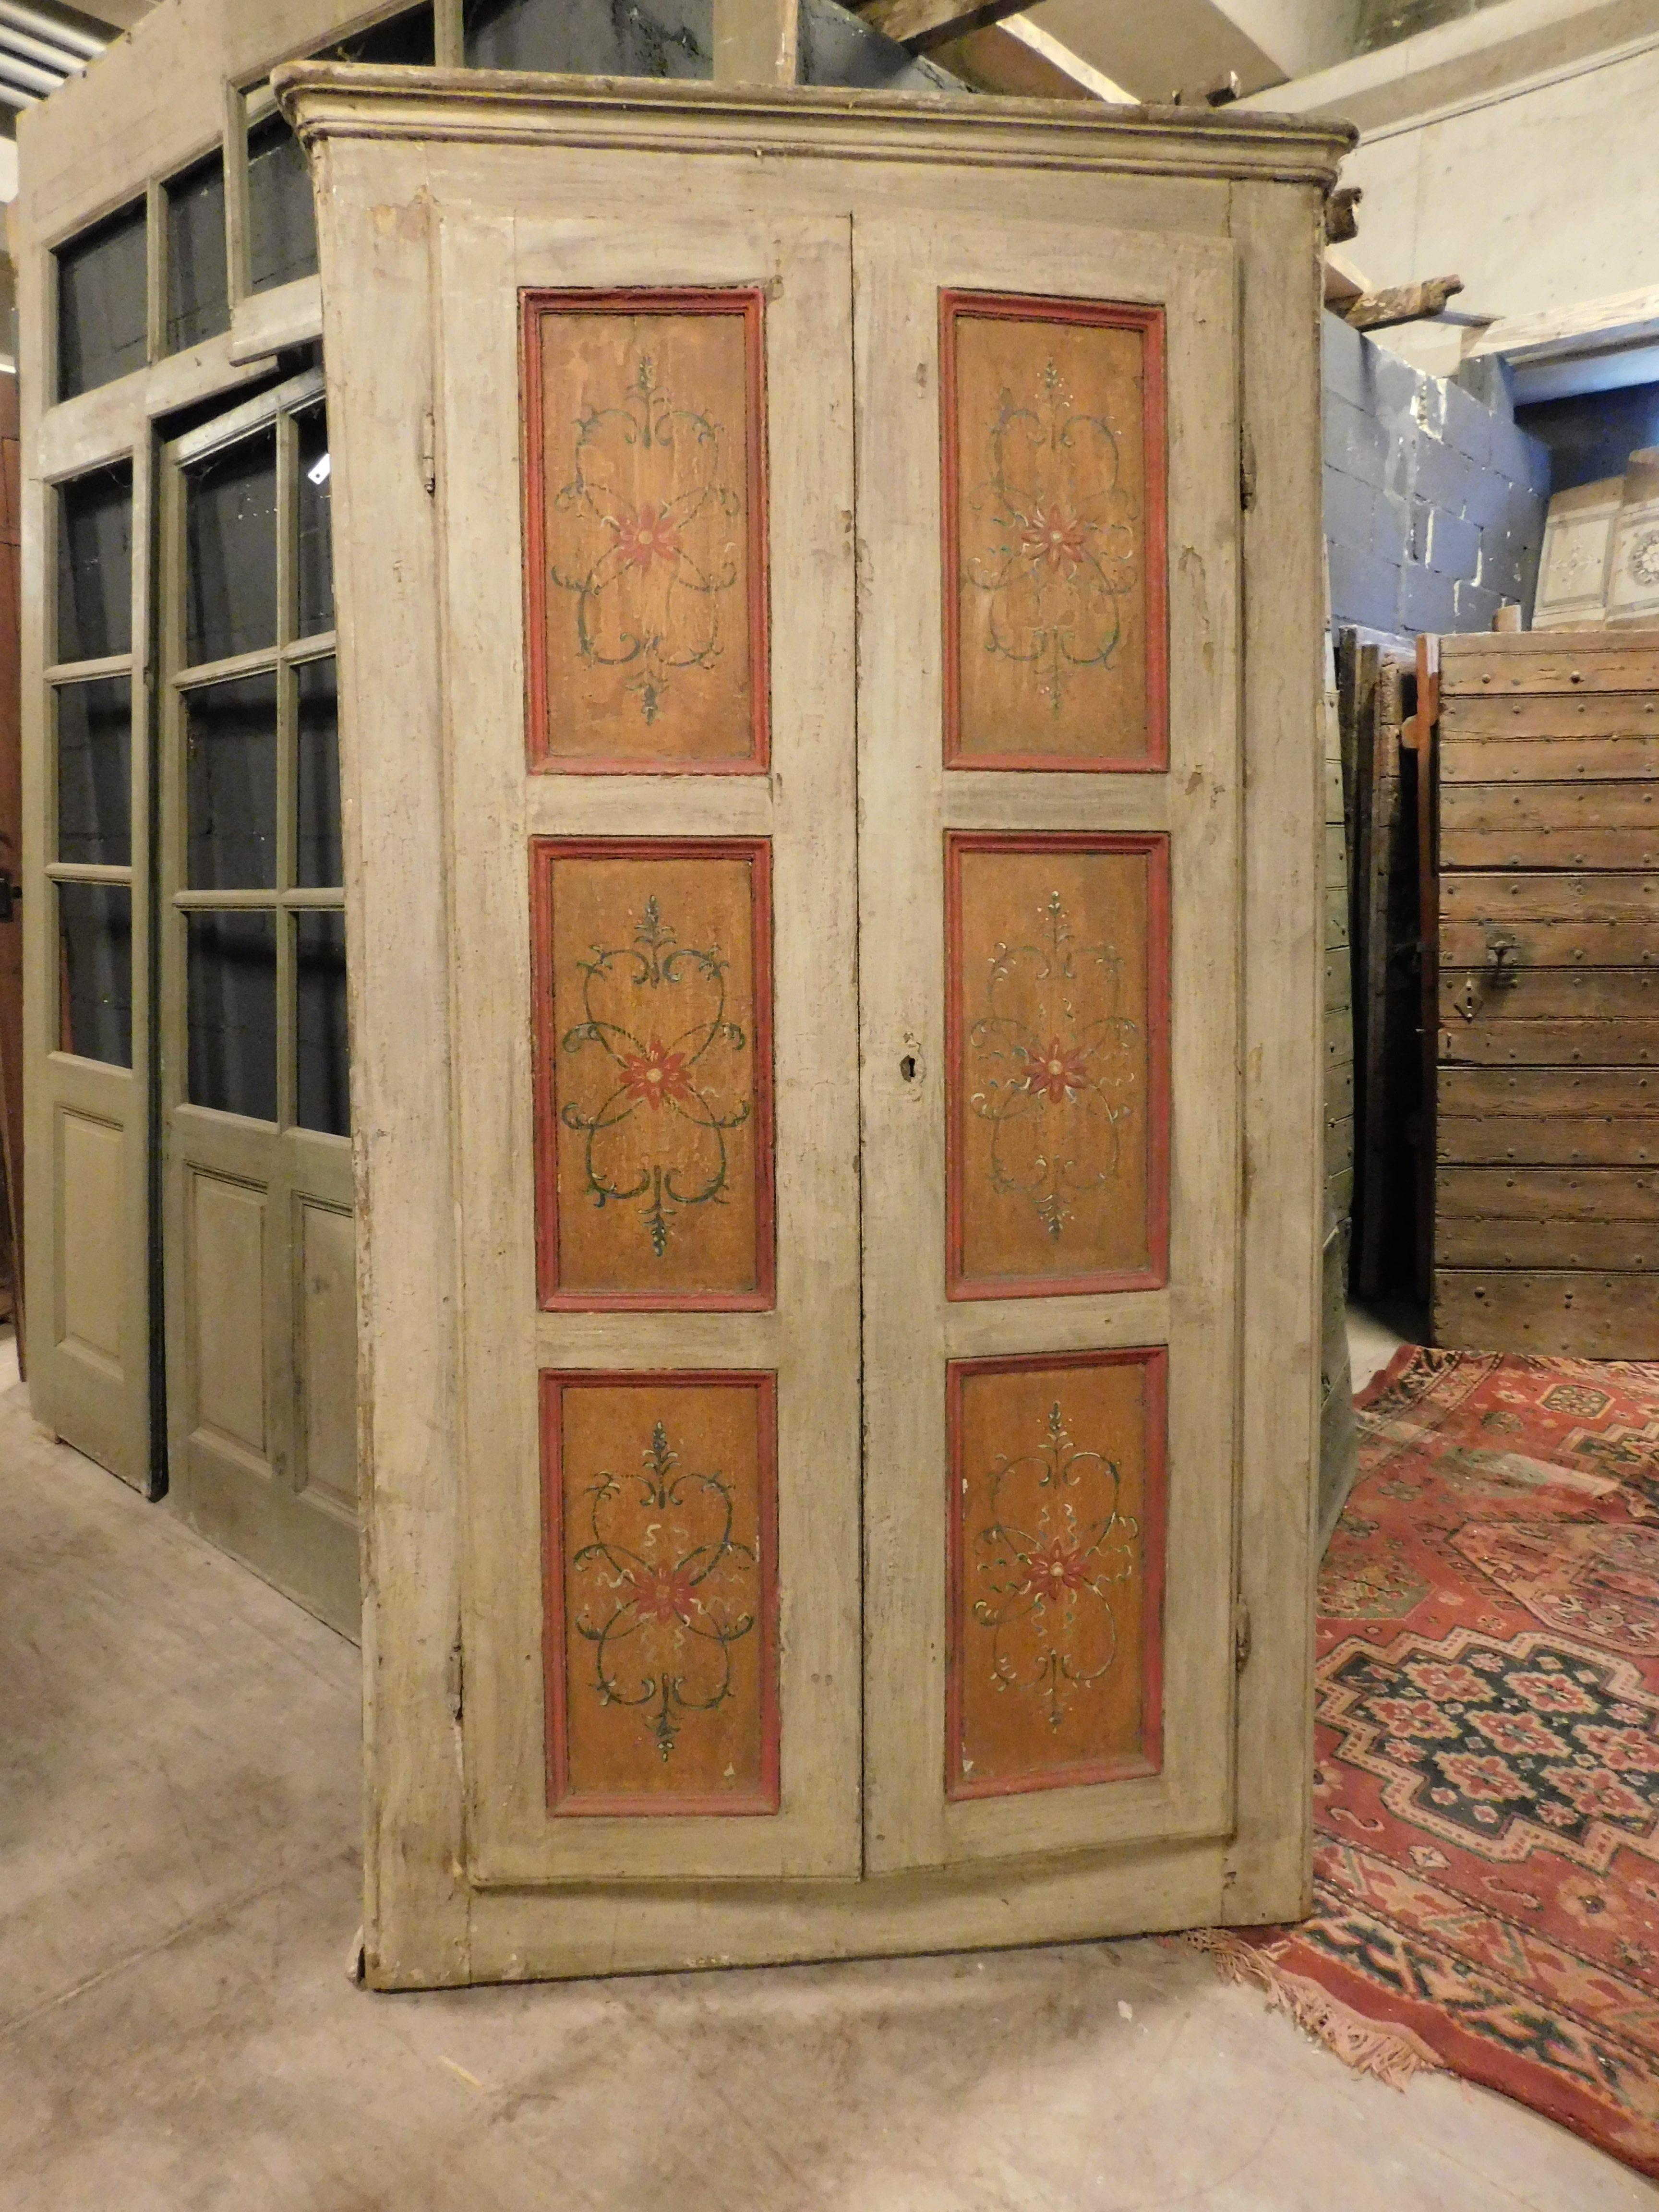 Antike lackierte Wandtafel mit Türen, die mit floralen Motiven bemalt sind. Handgefertigt im 18. Jahrhundert, aus Süditalien. Aus hellem Holz gefertigt, passt dieses schöne Plakat dank der Farben des Lacks, der hellen und glänzenden Anker zu jedem